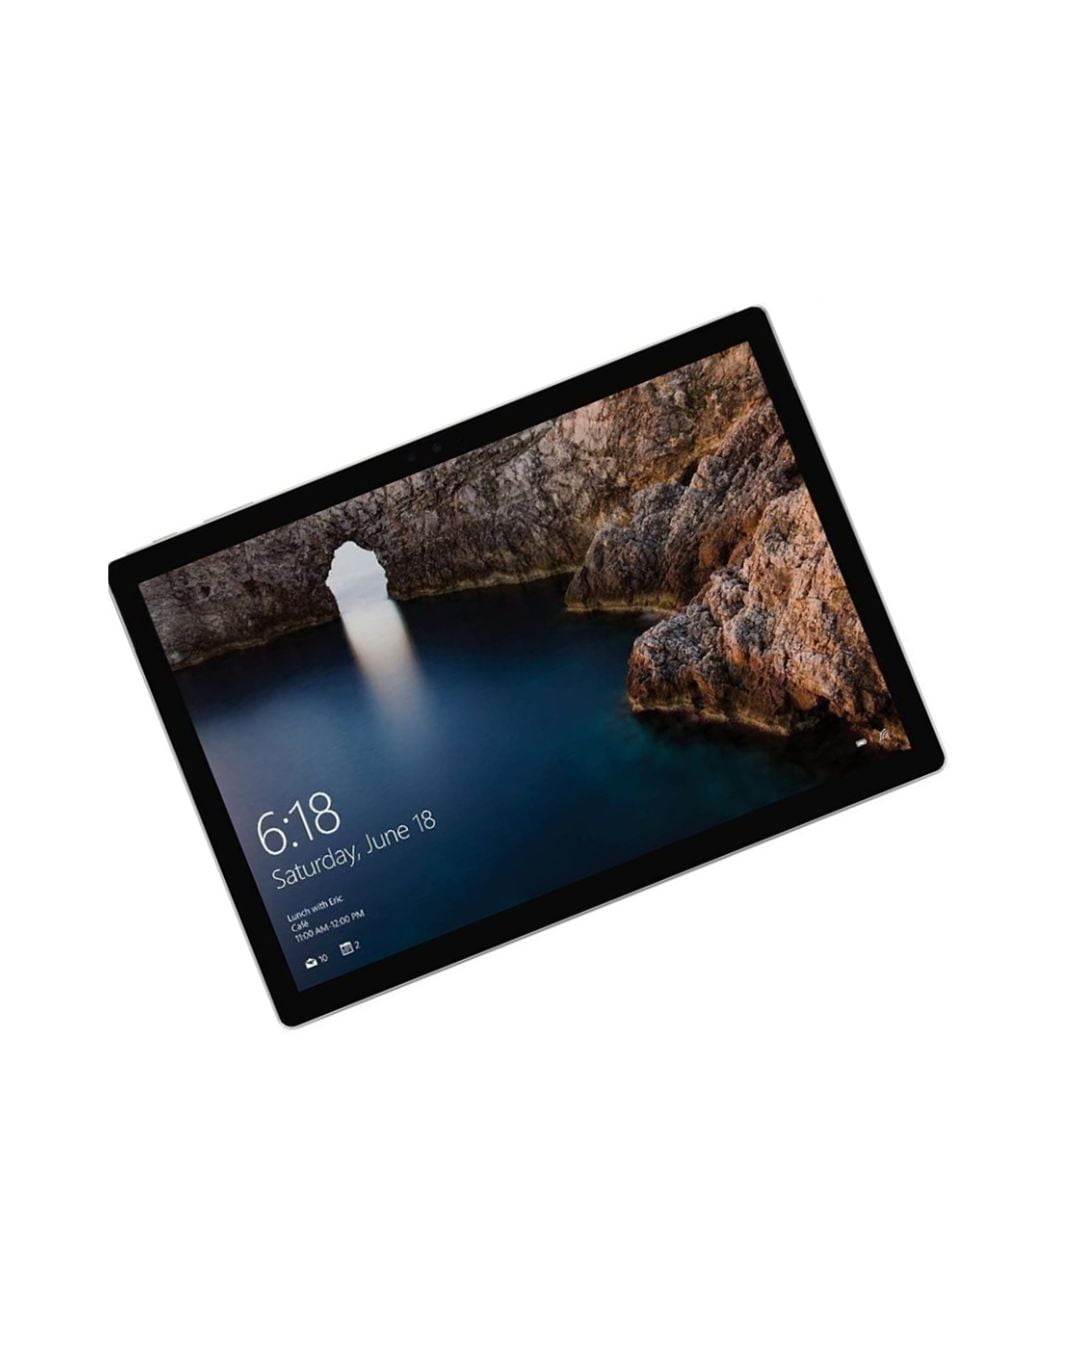 限定SALE人気SurfaceBook 1703 Core i5-6300U 8GB SSD128GB WiFi WEBカメラ タッチパネル Windows10Pro 13.5インチ 中古タブレットPC Windows